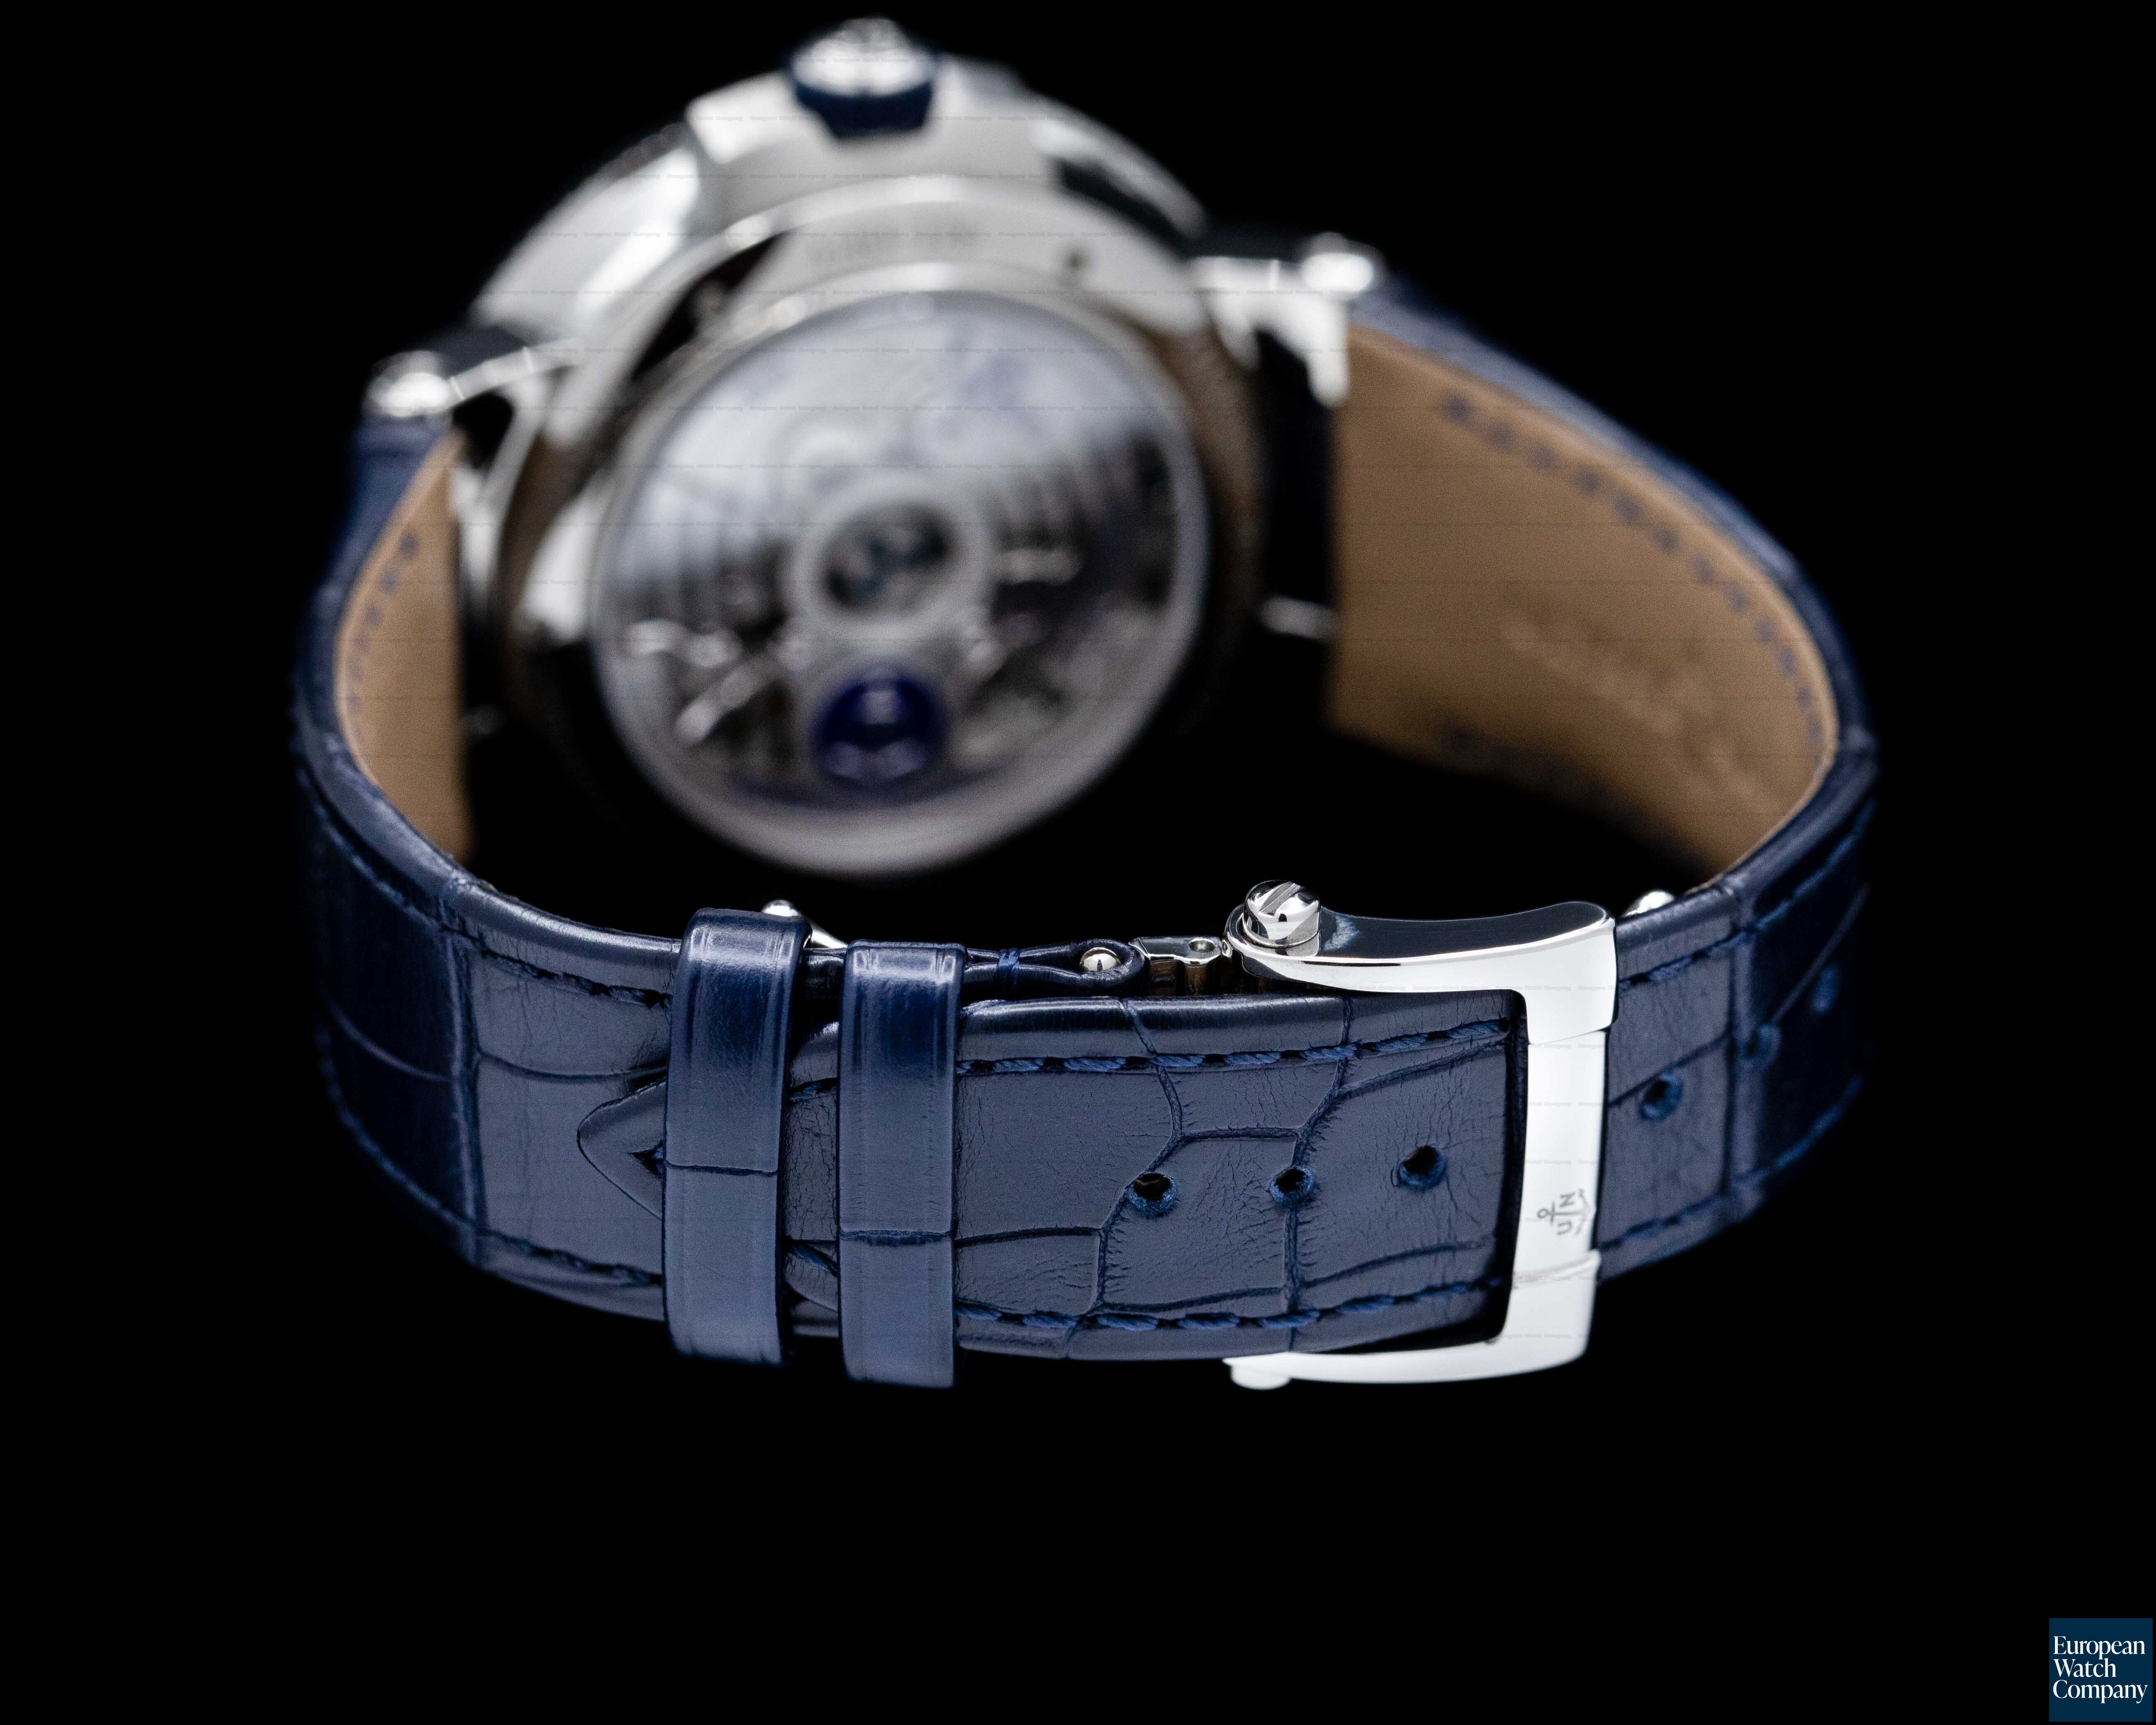 Ulysse Nardin Ulysse Nardin Marine Chronometer Manufacturer Blue Dial Limited Ref. 1183-126/63